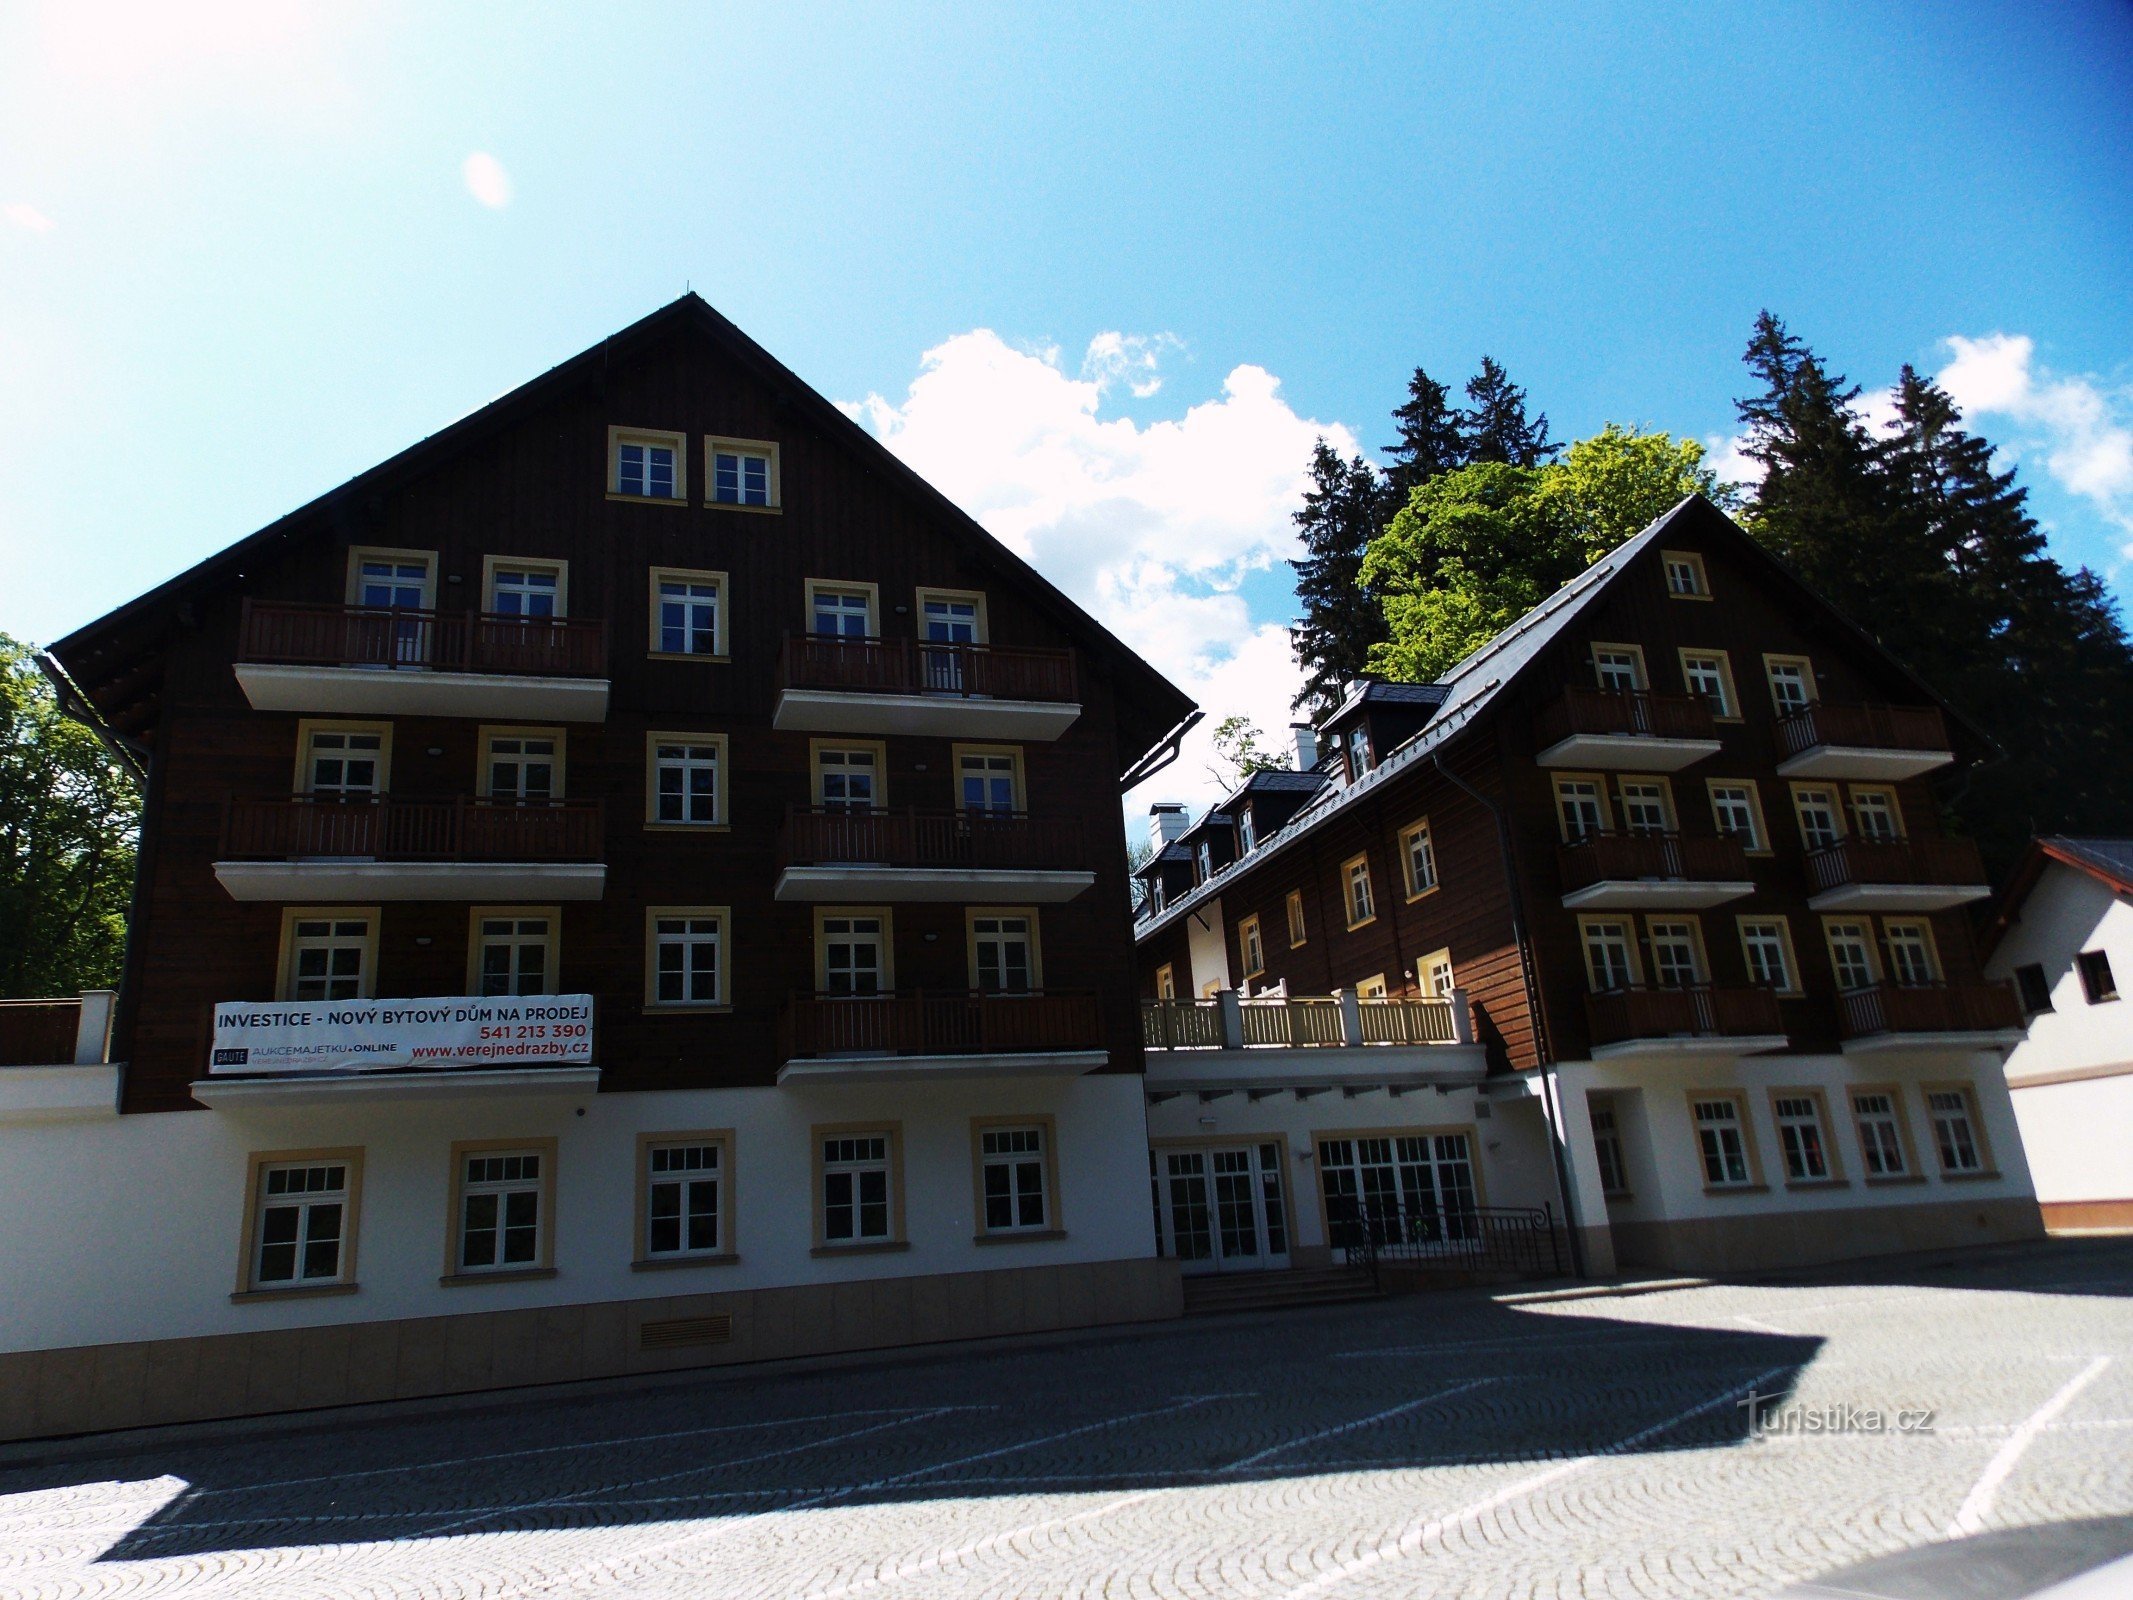 Legendarni hotel Hubertus u Karlová Studánka